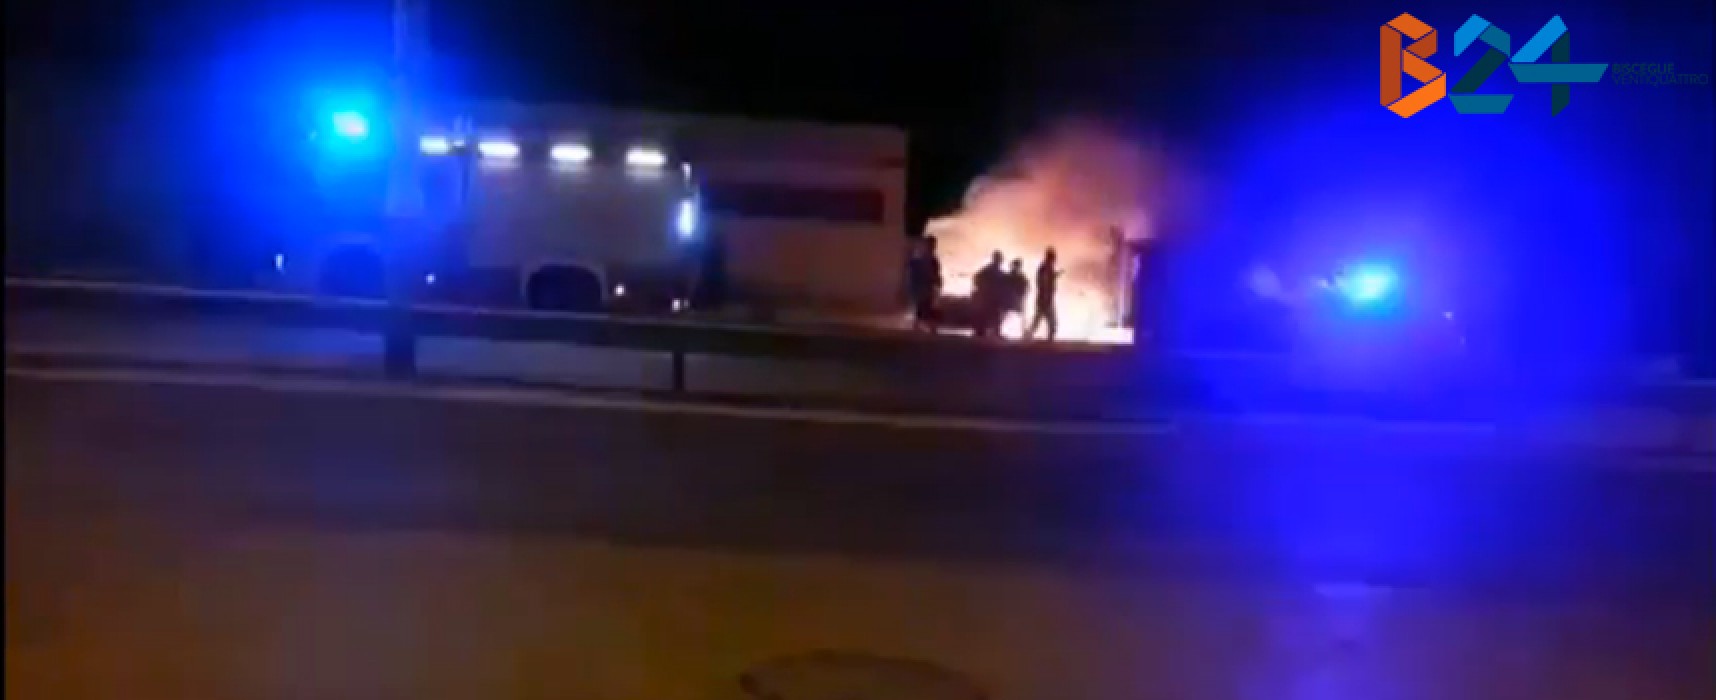 Rubano un’auto, si schiantano e scappano: bloccati dai Carabinieri due ragazzi / VIDEO incendio